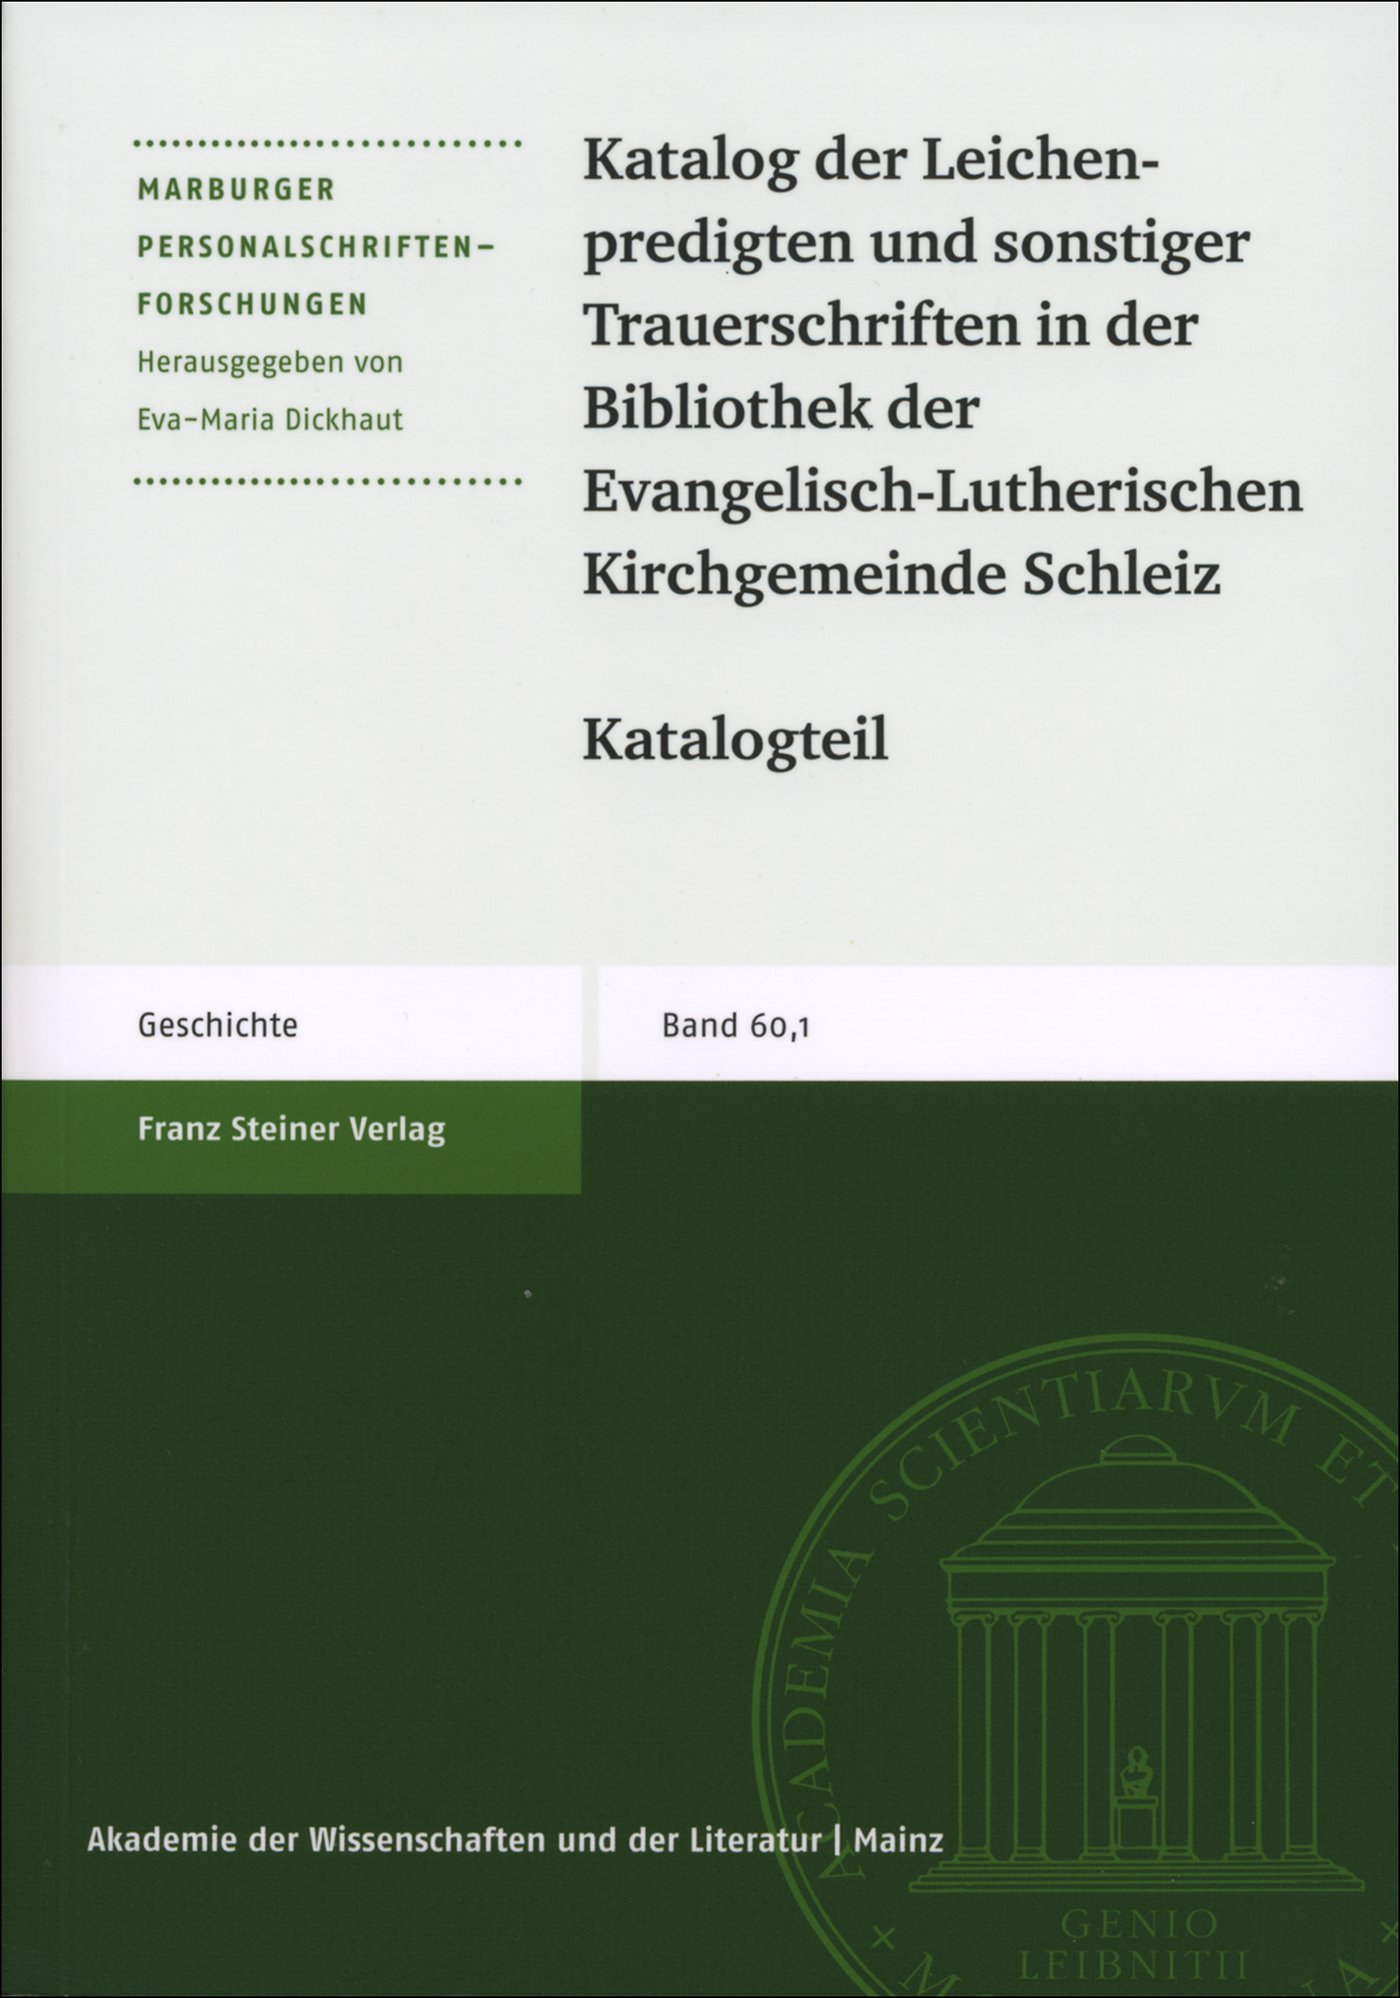 Katalog der Leichenpredigten und sonstiger Trauerschriften in der Bibliothek der Evangelisch-Lutherischen Kirchgemeinde Schleiz